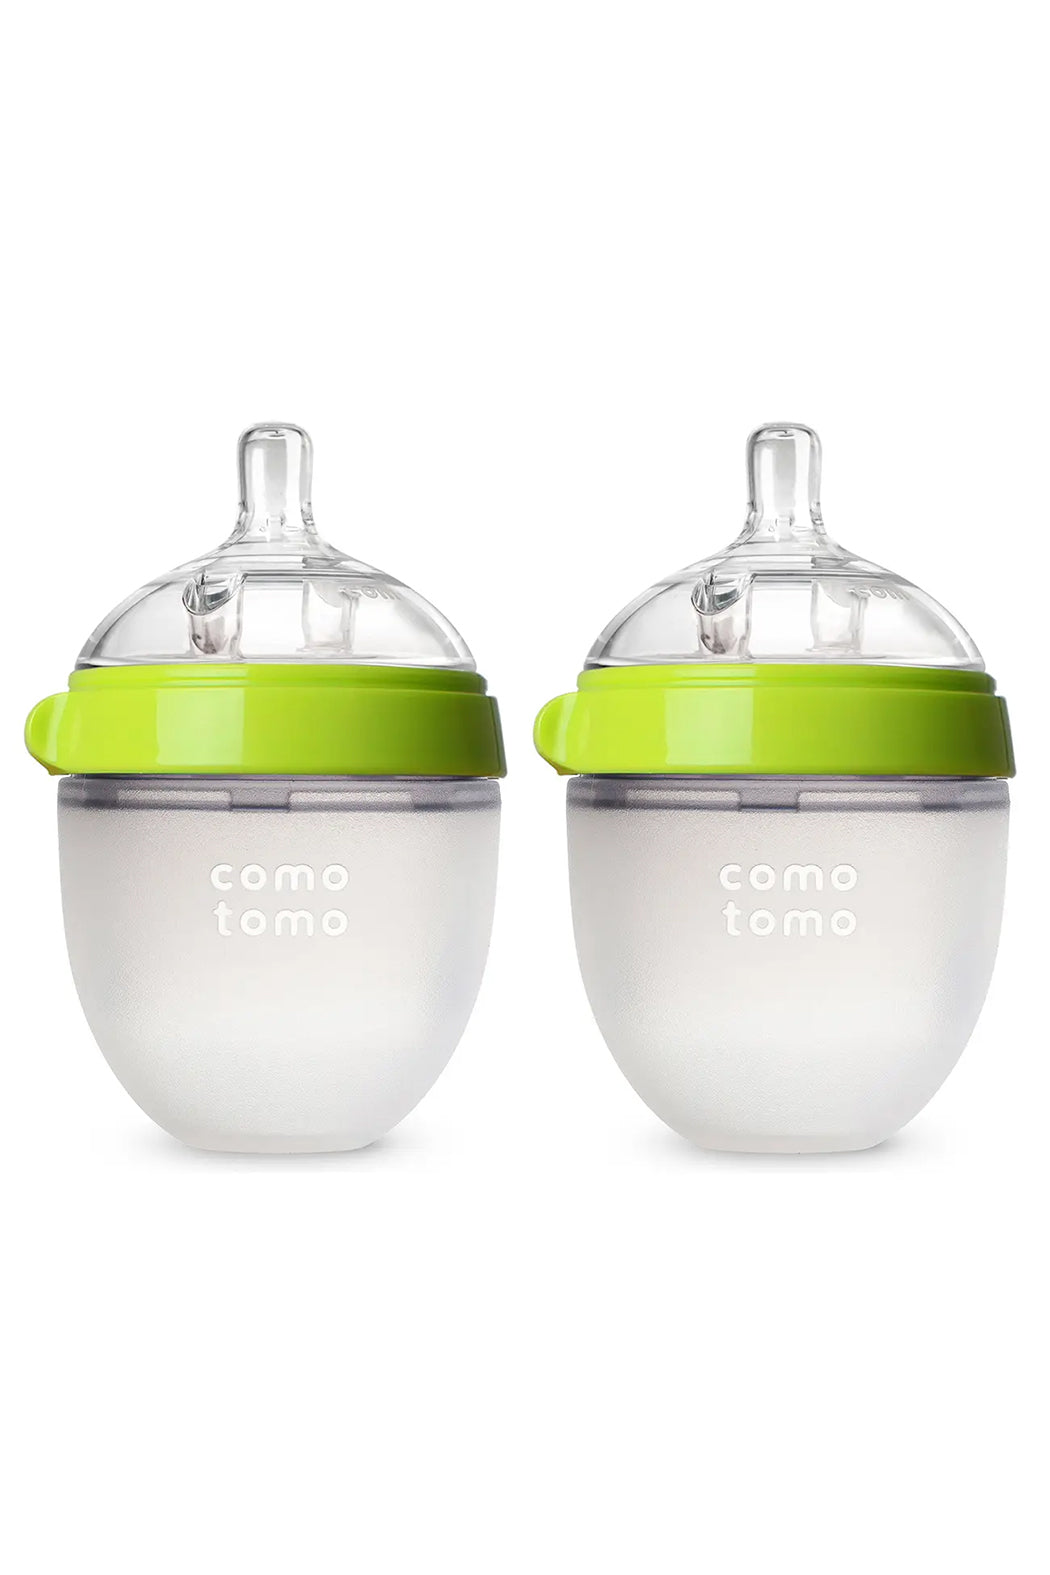 Comotomo Baby Bottle Double Pack - 5 oz - Green